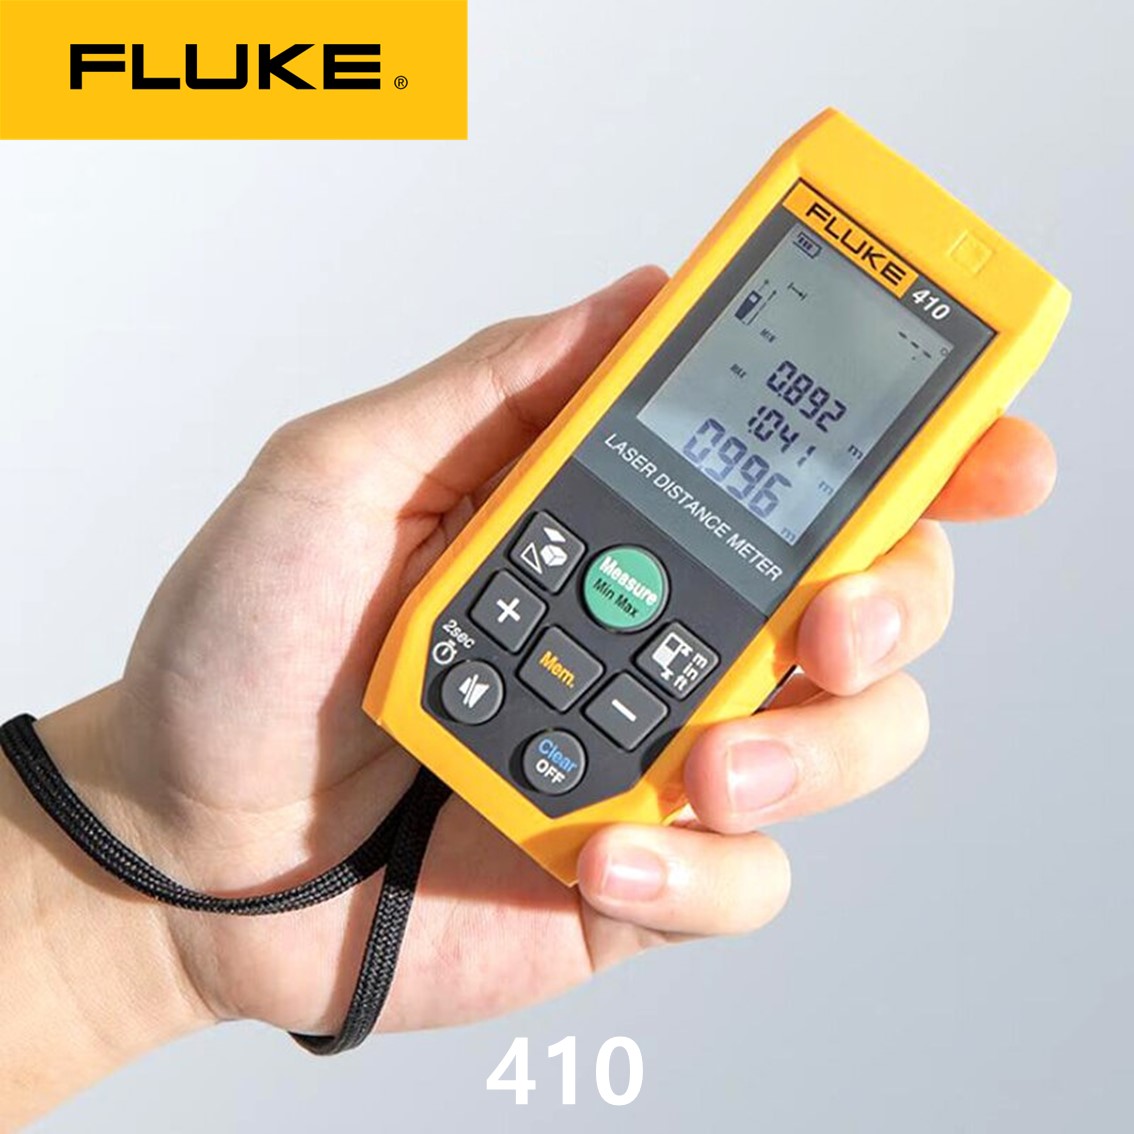 [ FLUKE 410 ] 정품 플루크 레이저거리측정기,레이저줄자 100M